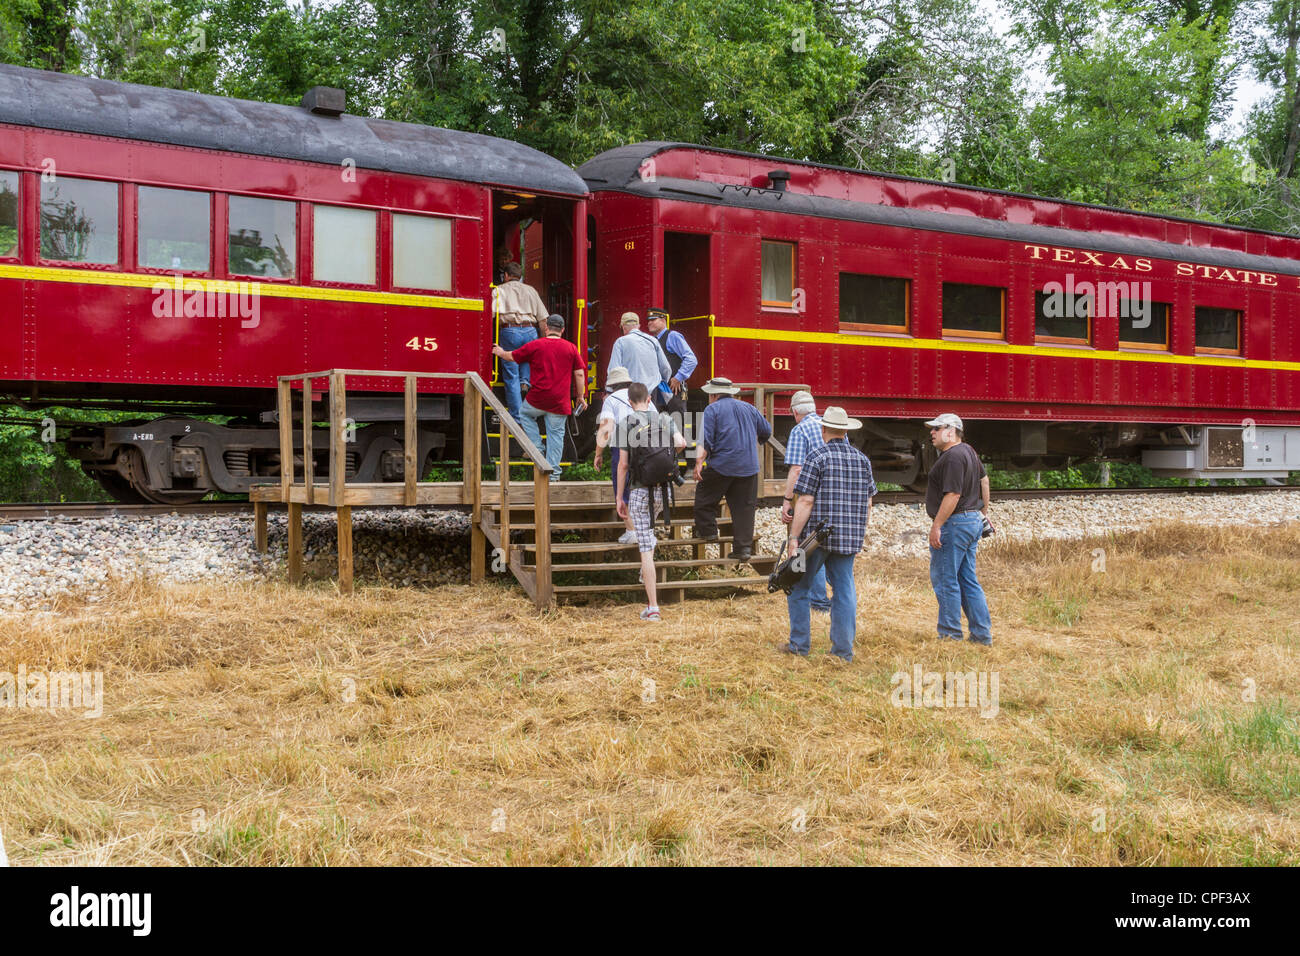 Fotografen beim 2012 Railfest Fotoexkursion Wochenende in der 'Texas State Railroad' Dampflokomotive Bahnfahrt in der Nähe von Rusk, Texas. Stockfoto